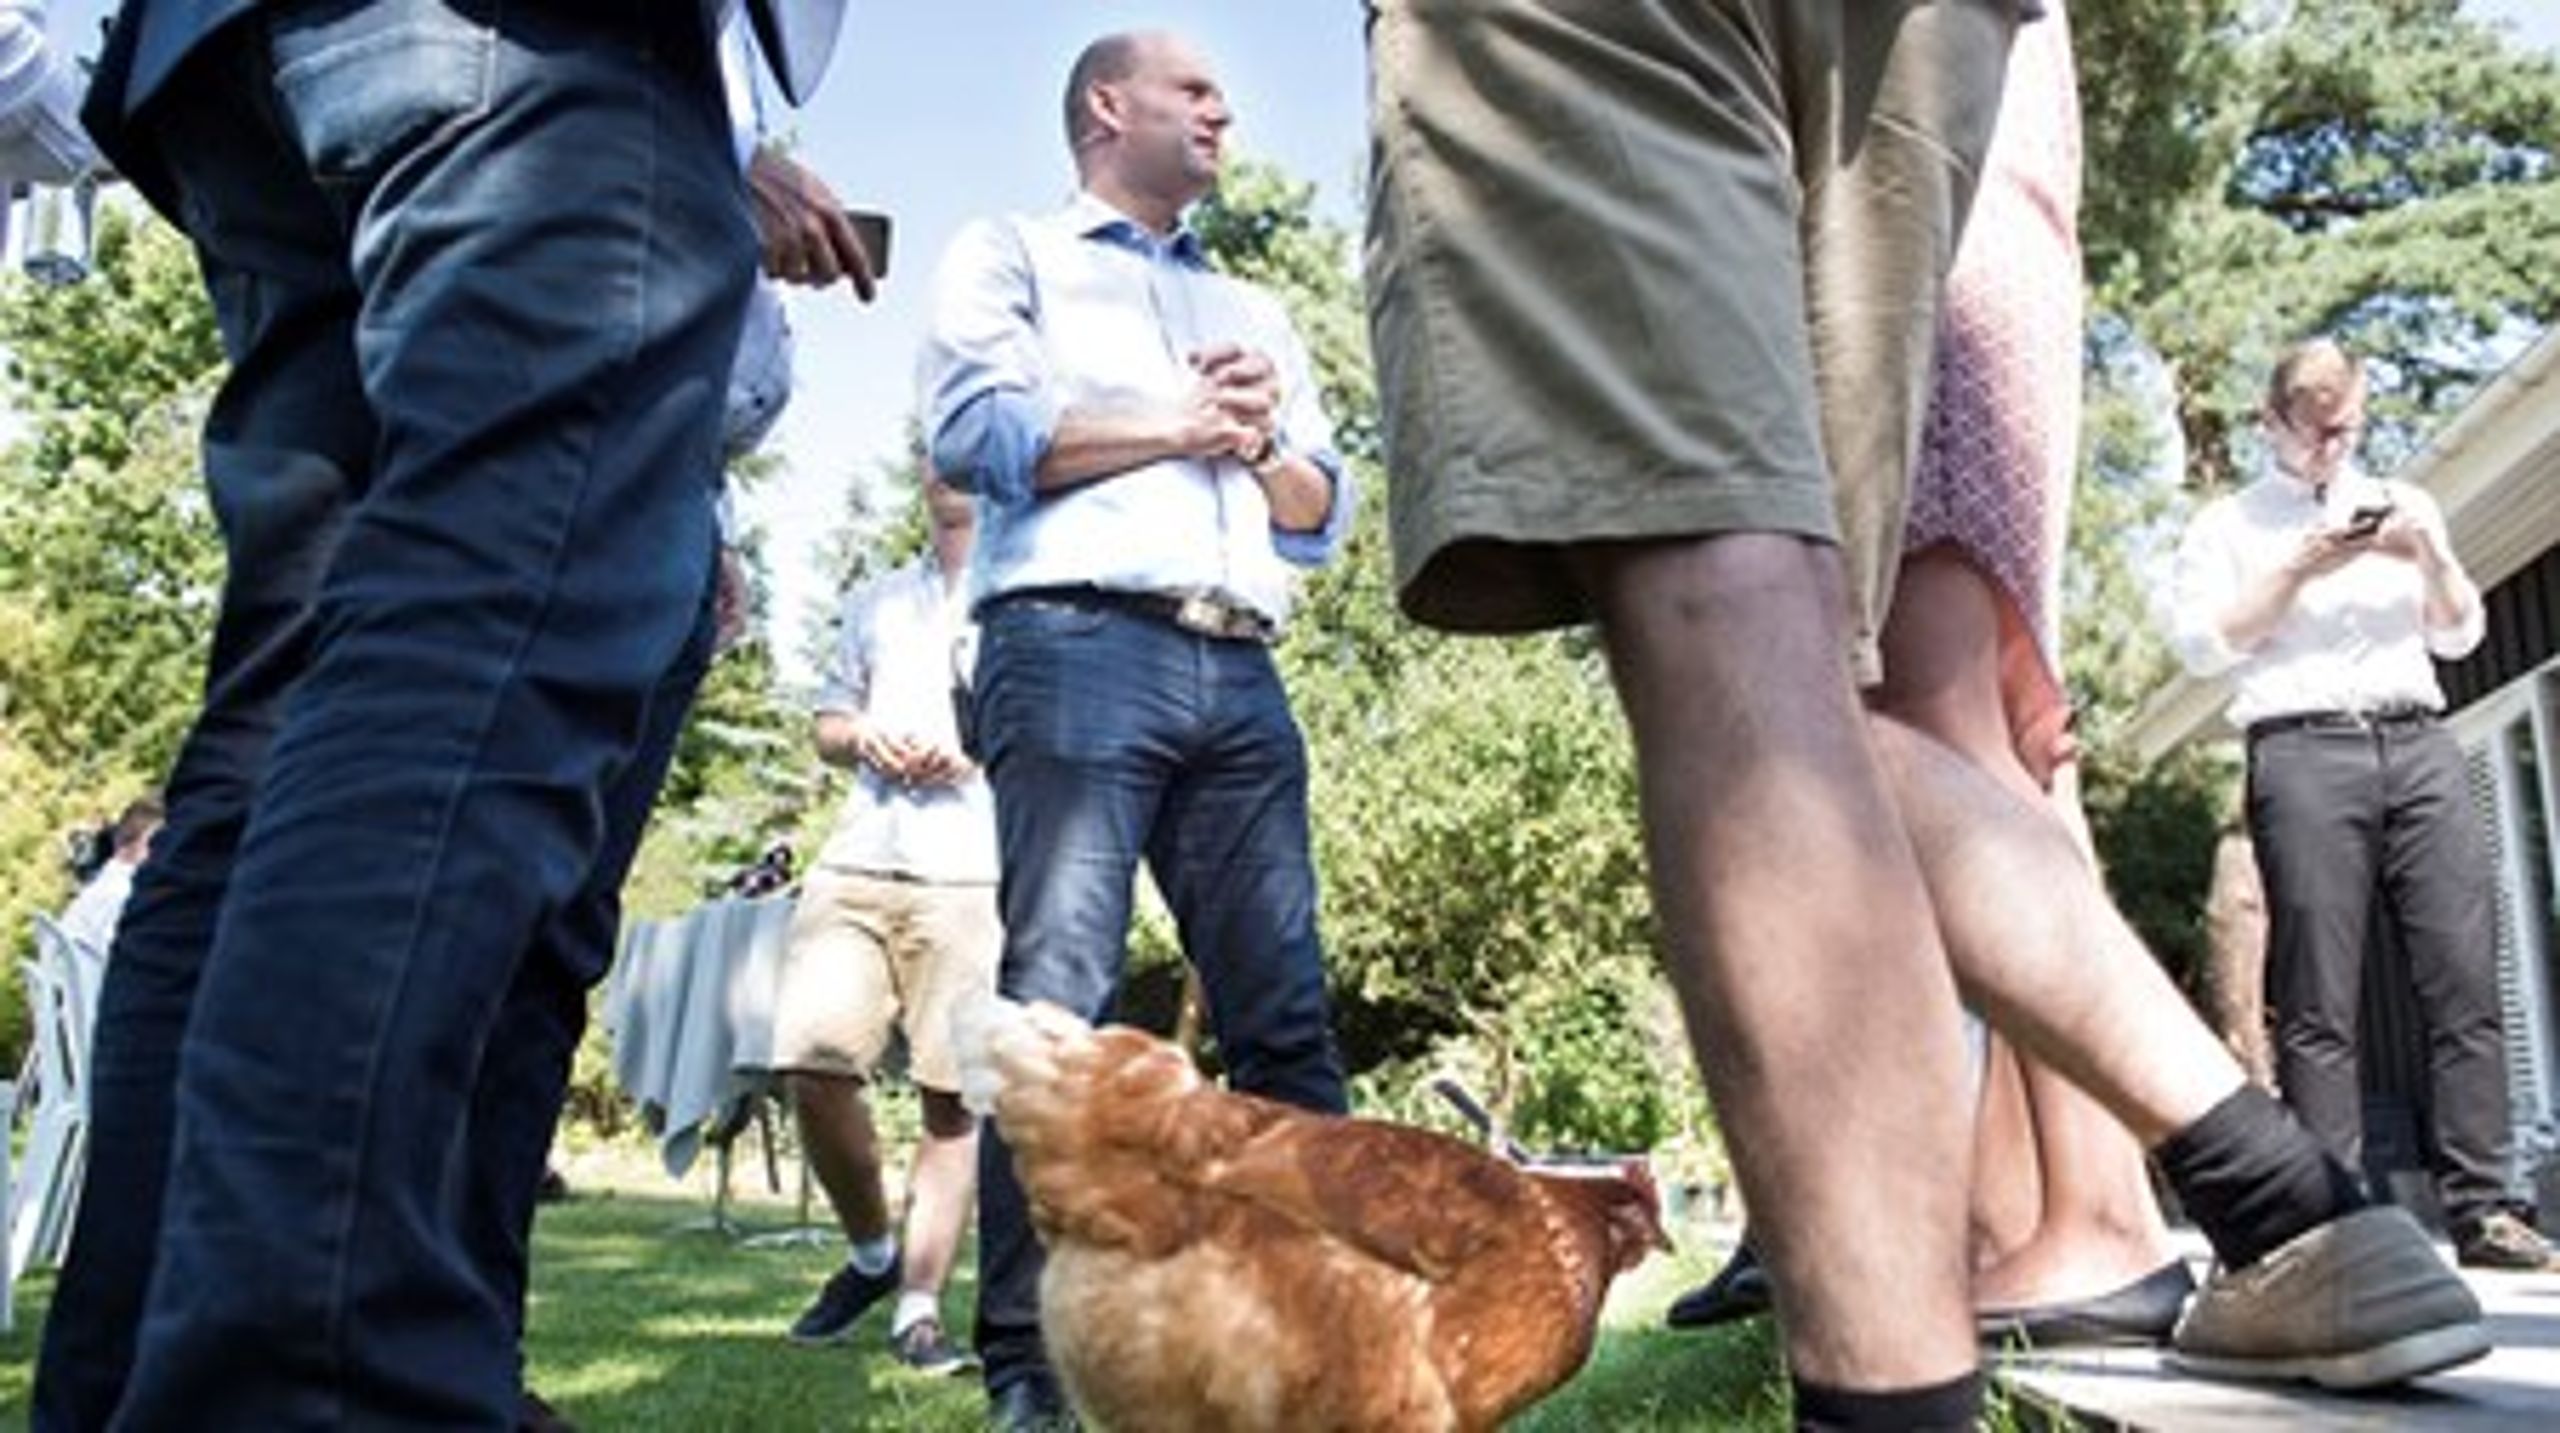 Konservative holdt torsdag middag pressemøde i en privat baghave i Snekkersten, hvor&nbsp;høns gik frit rundt mellem fødderne på de fremmødte.&nbsp;